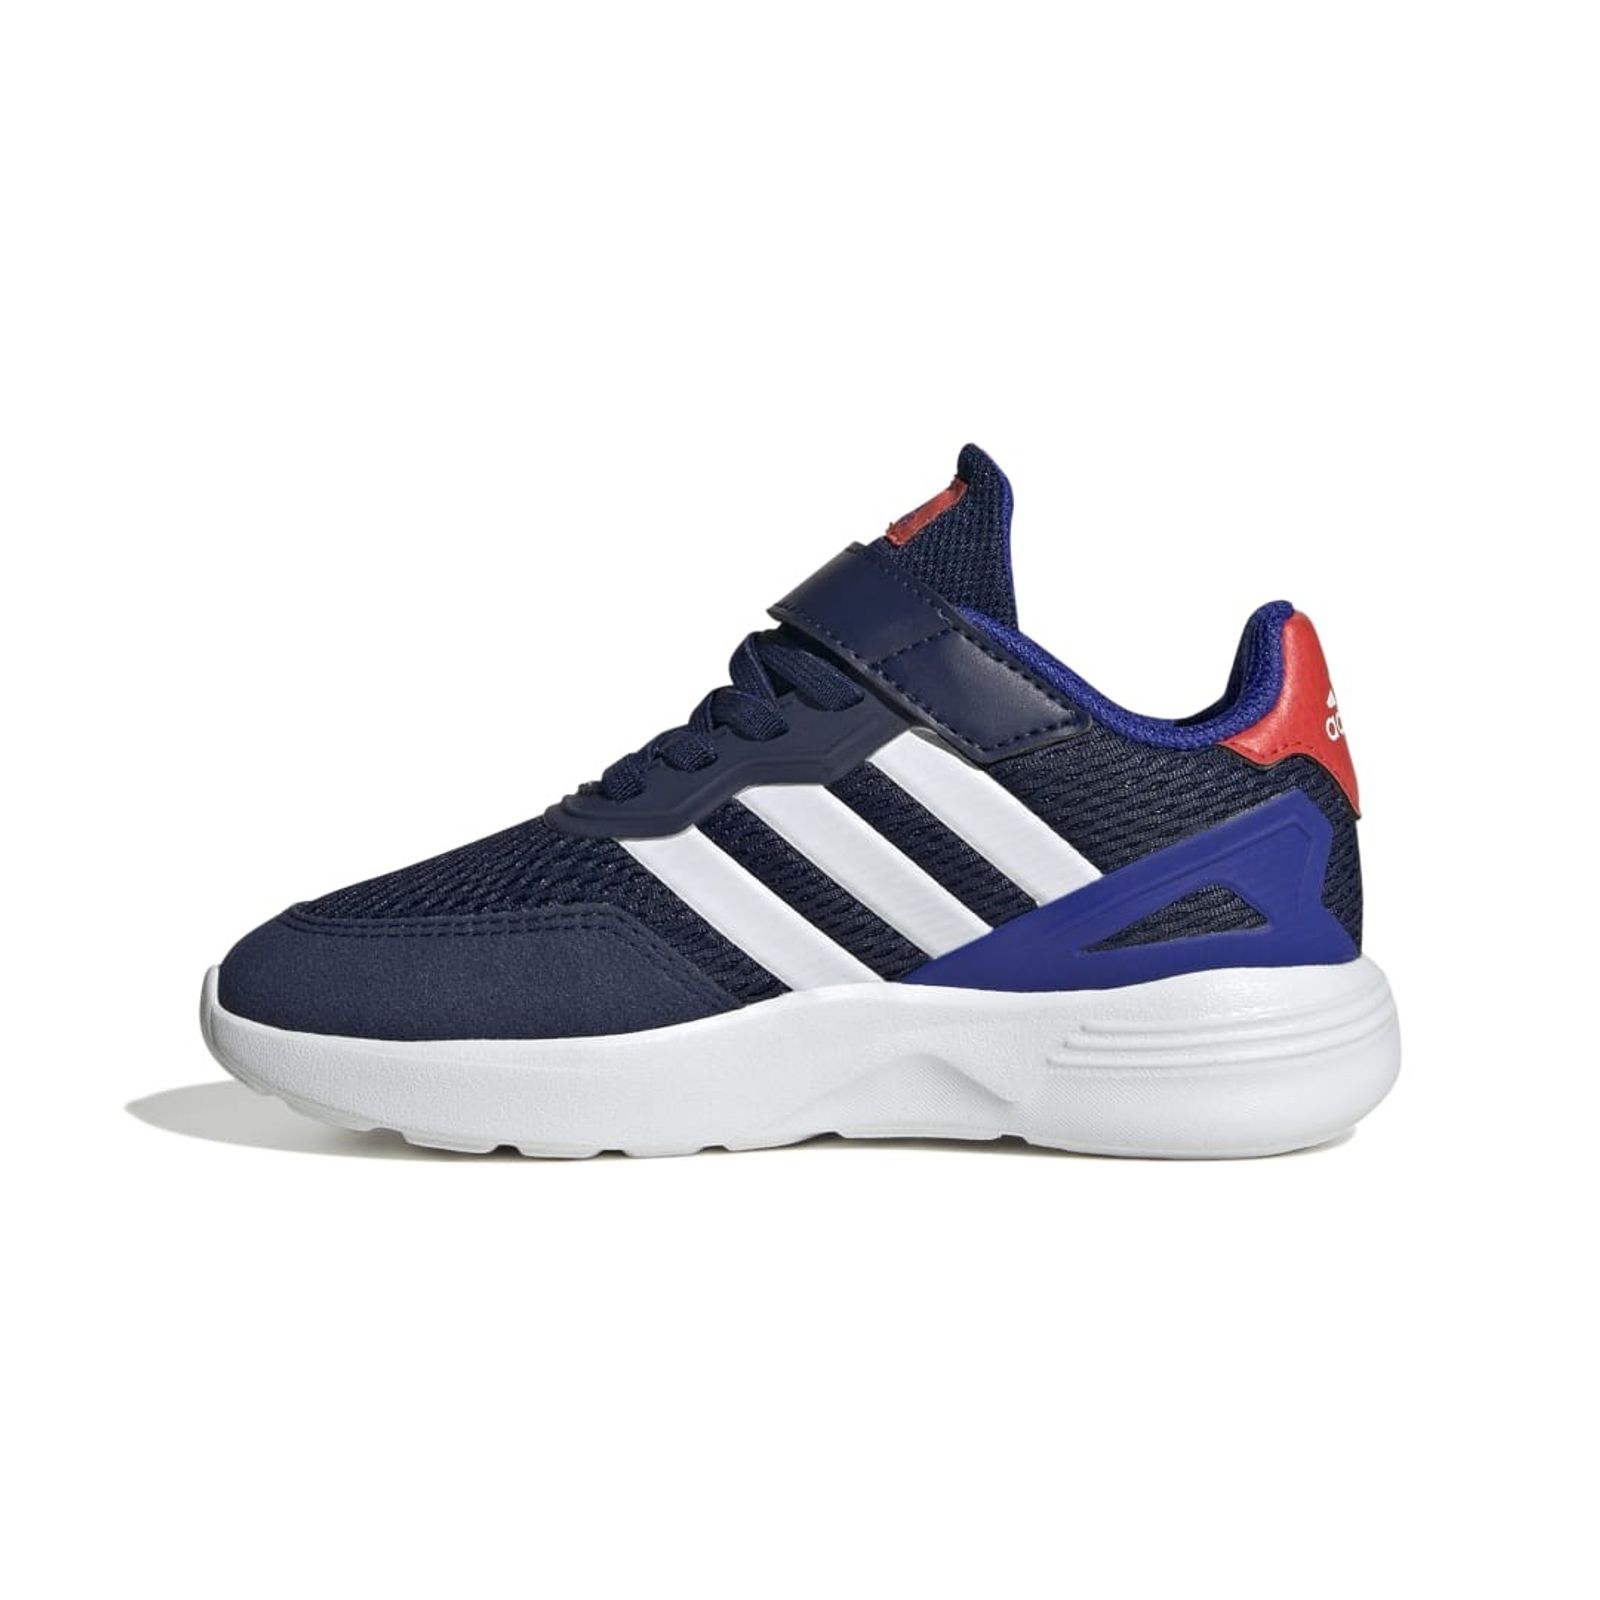 Schuh von Adidas, 29